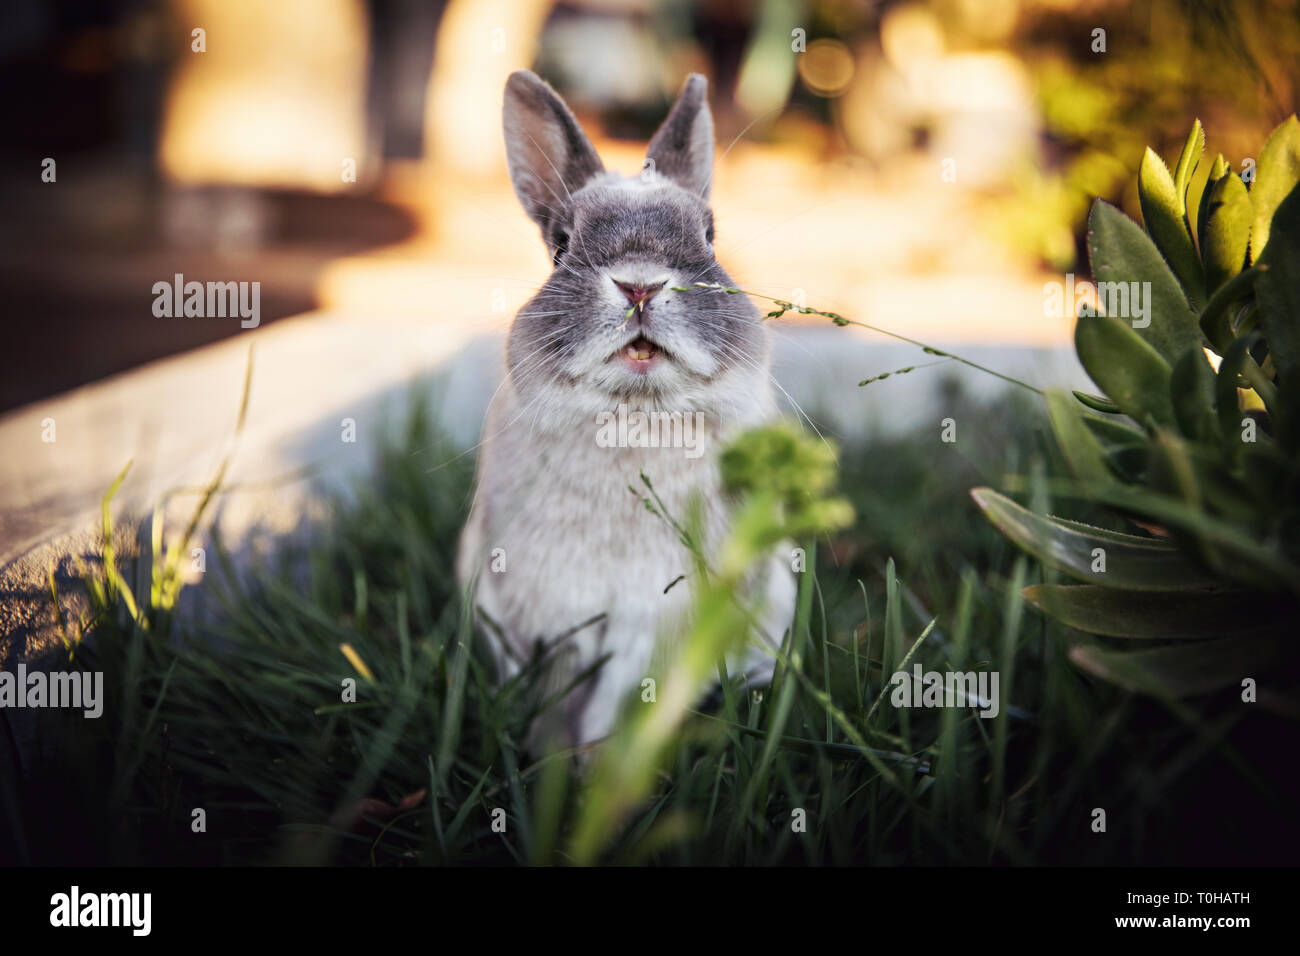 Ein ausdrucksstarkes Portrait von einem Zwerg Bunny mit seinem Mund agape in einem begrünten Außenbereich. Stockfoto